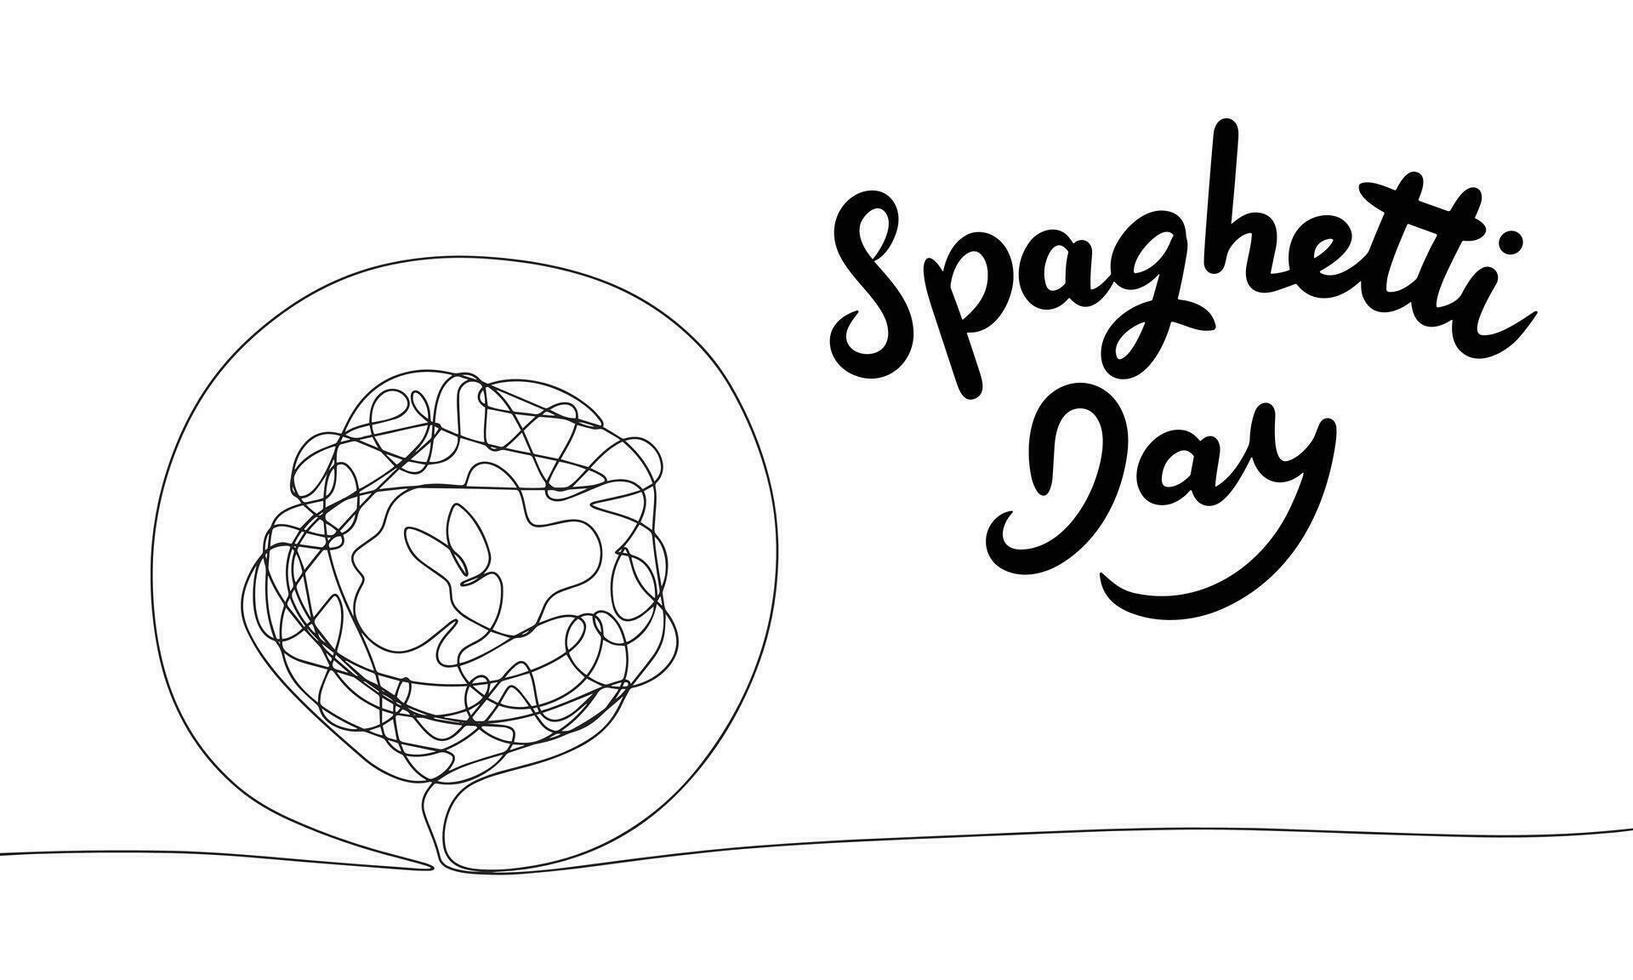 spaghetti dag baner. handstil text baner spaghetti dag med linje konst spaghetti på tallrik. hand dragen vektor konst.